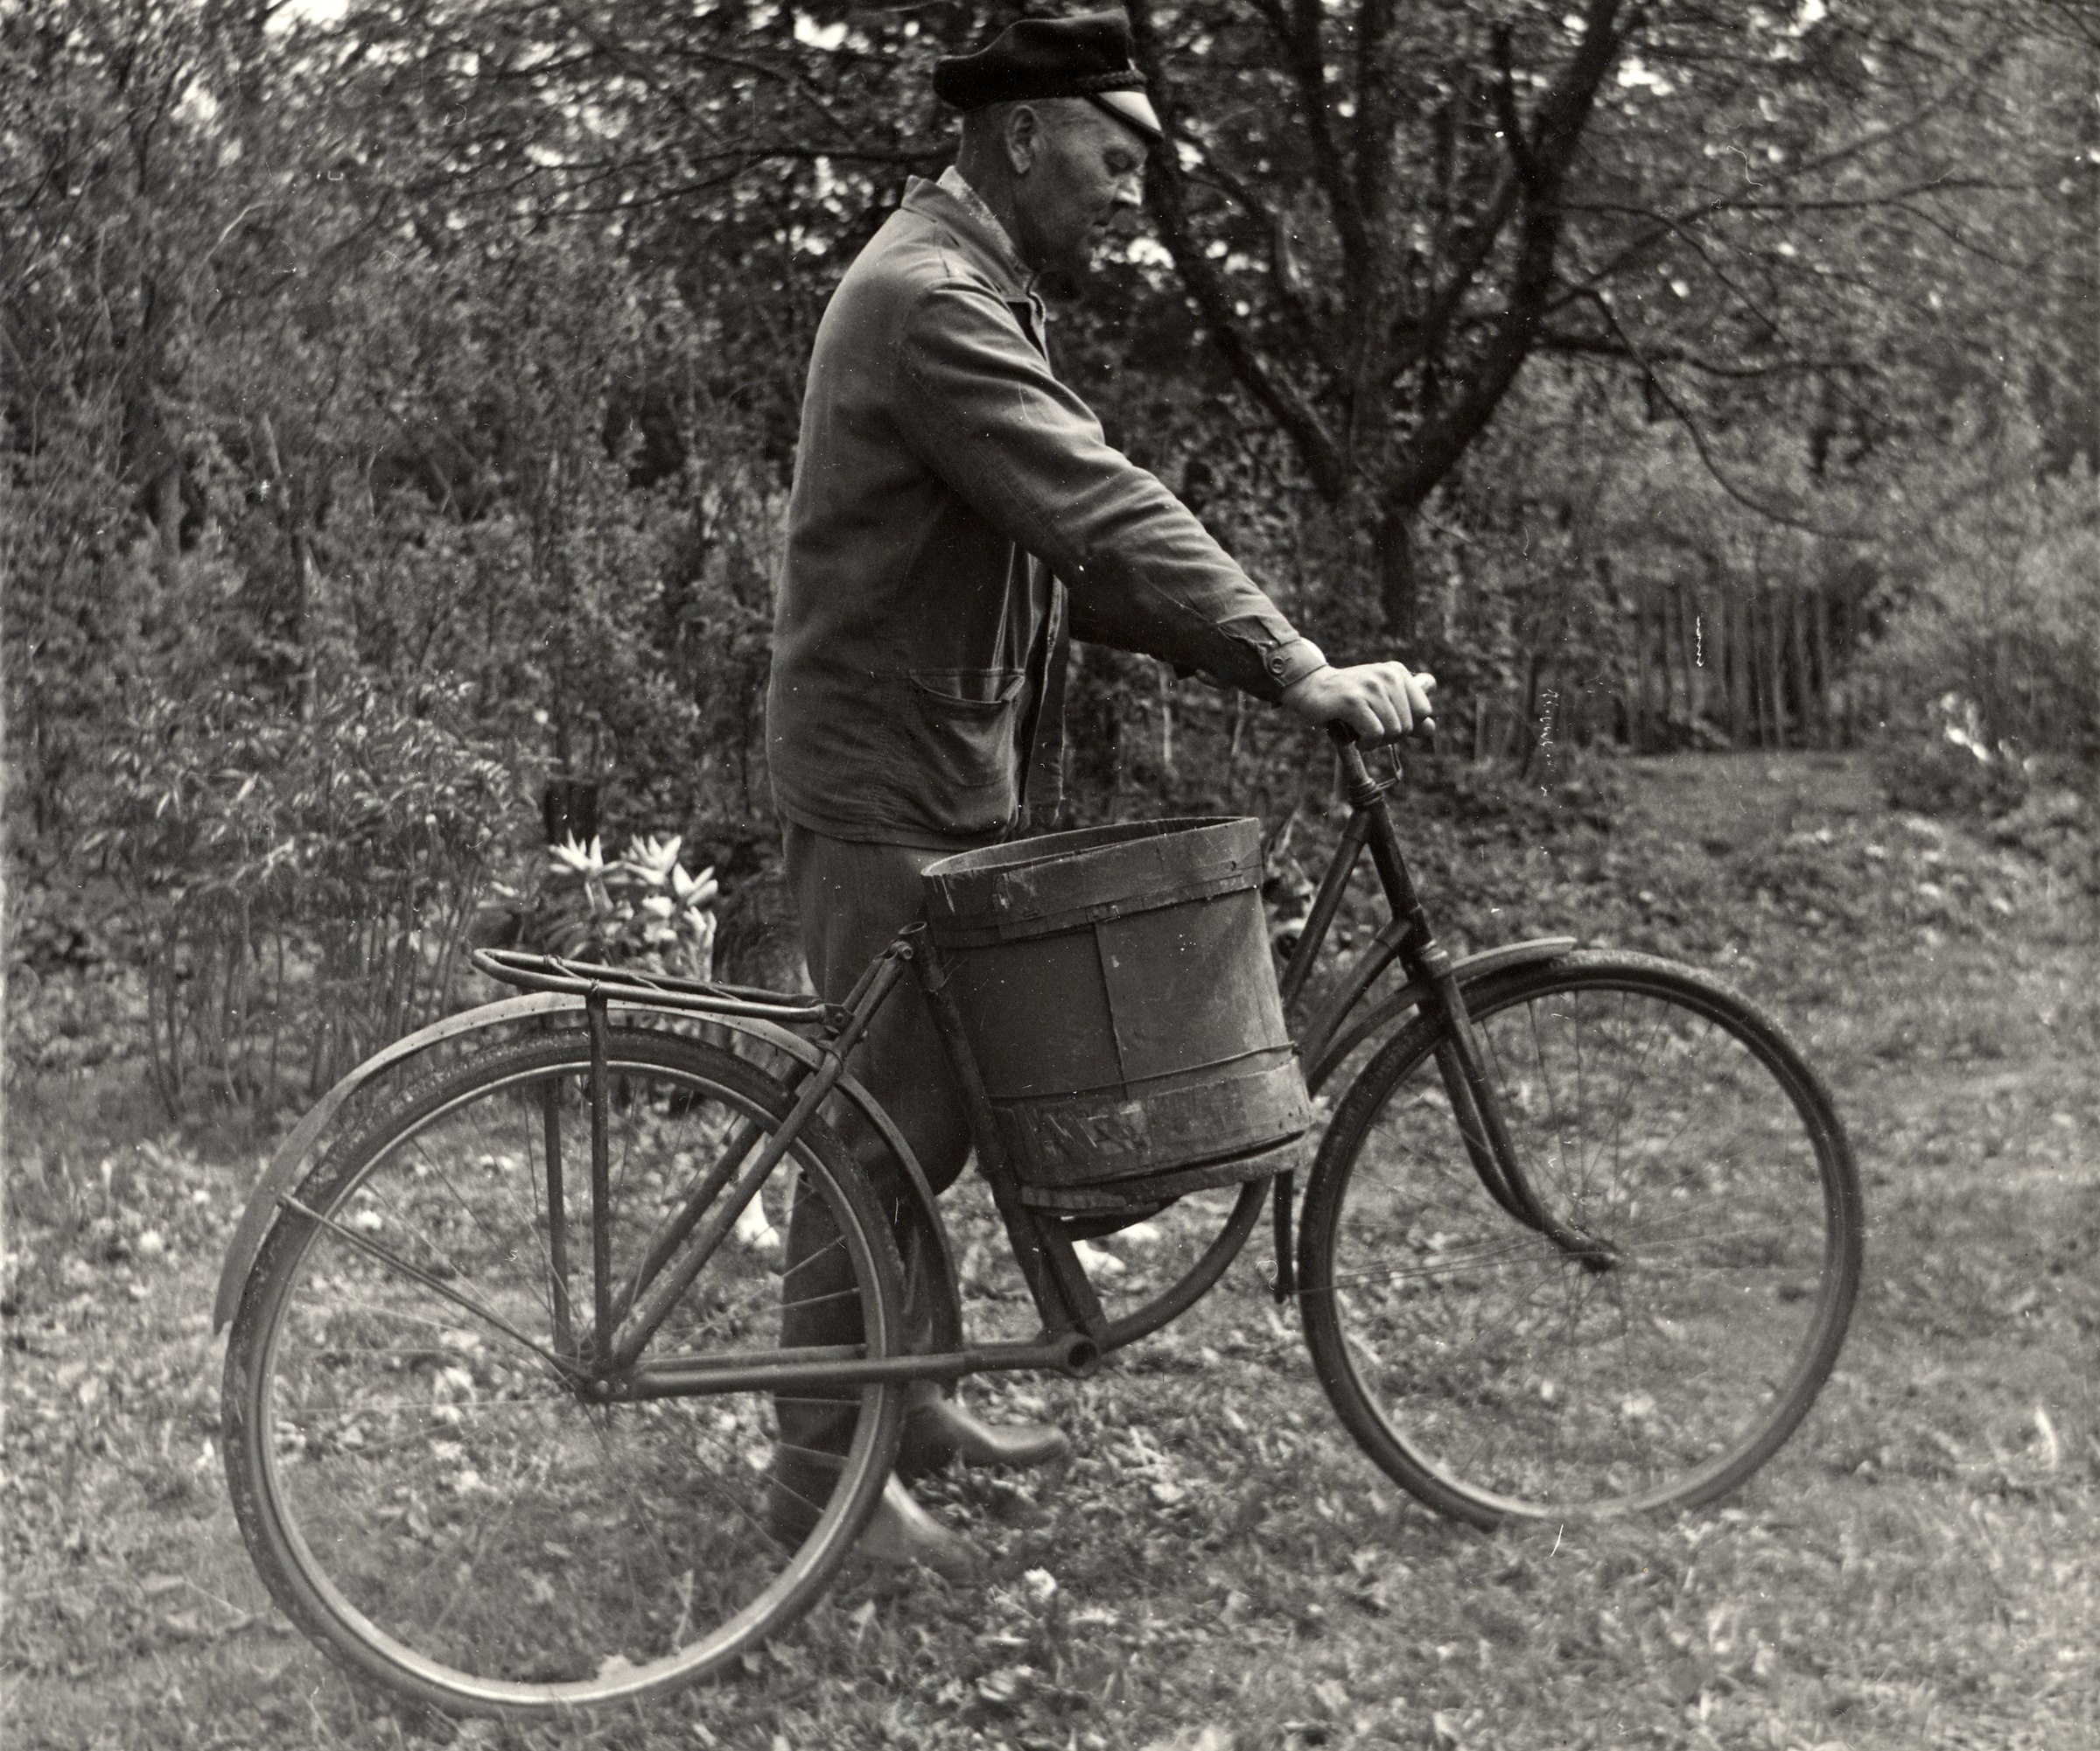 Külgkorvi võib pidada vanemaks kui mootorratast, sest mõnedel andmetel sündis neist esimene juba 1893. aastal Prantsusmaal, kui üks ajaleht korraldas leiutiste konkursi, kuhu oodati lahendusi probleemile, kuidas vedada kaasreisjat jalgrattal kõige mugavamal ja elegantsemal moel. Võistlusele pakuti nii haagiskäru, ratta ette kinnitatavat gondlit kui ka kügkorvi. Tol ajal ei peetud veel heaks tooniks, et naisterahvas ise rattasadulas istus, mistõttu sobis härrasmehel oma daam just sõiduvahendi küljele kinnita